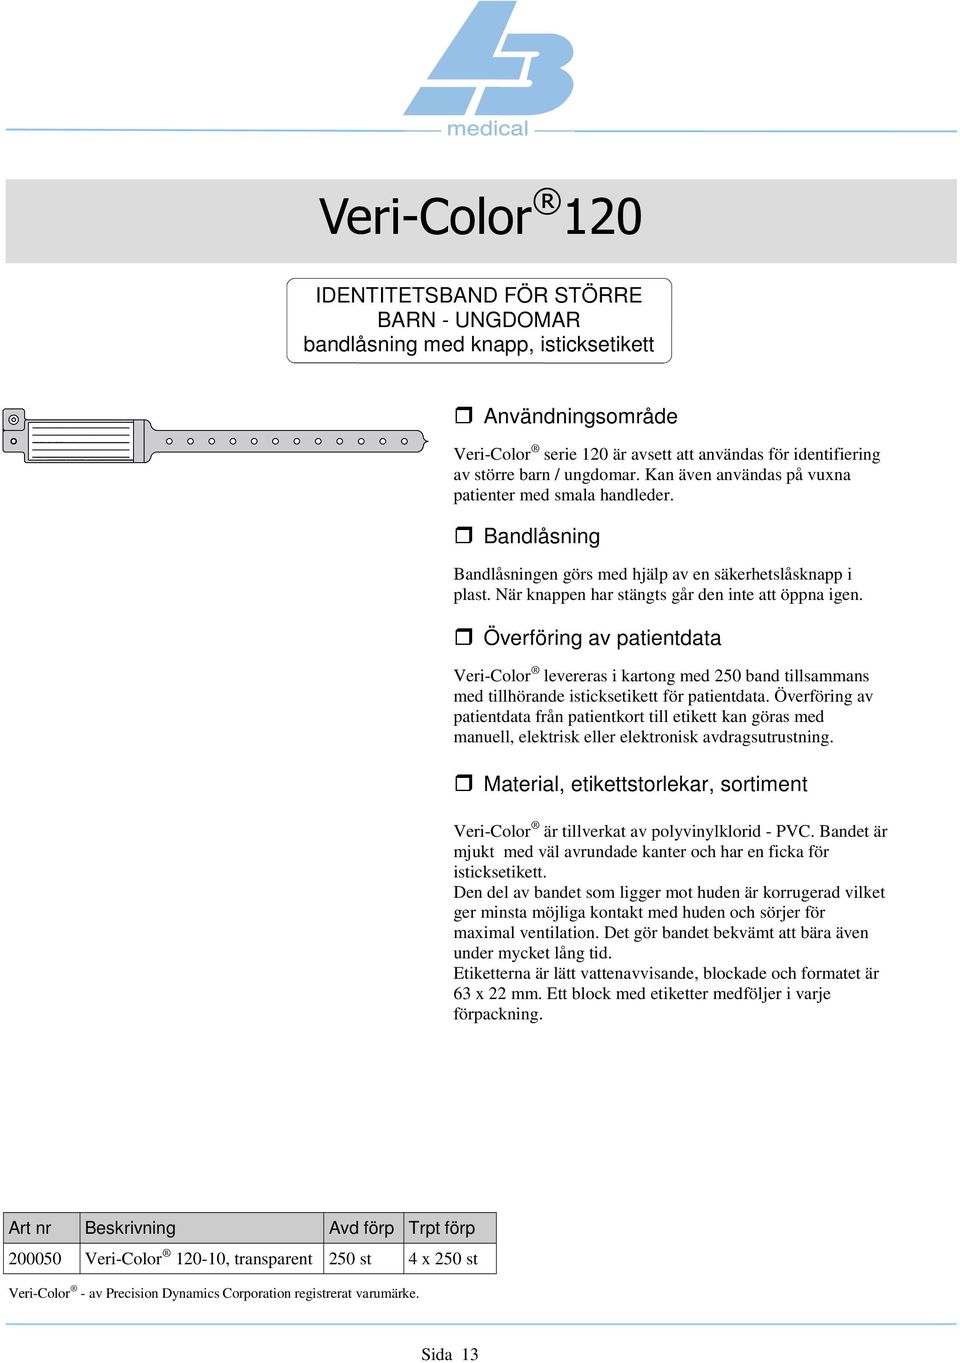 Veri-Color levereras i kartong med 250 band tillsammans med tillhörande isticksetikett för patientdata.